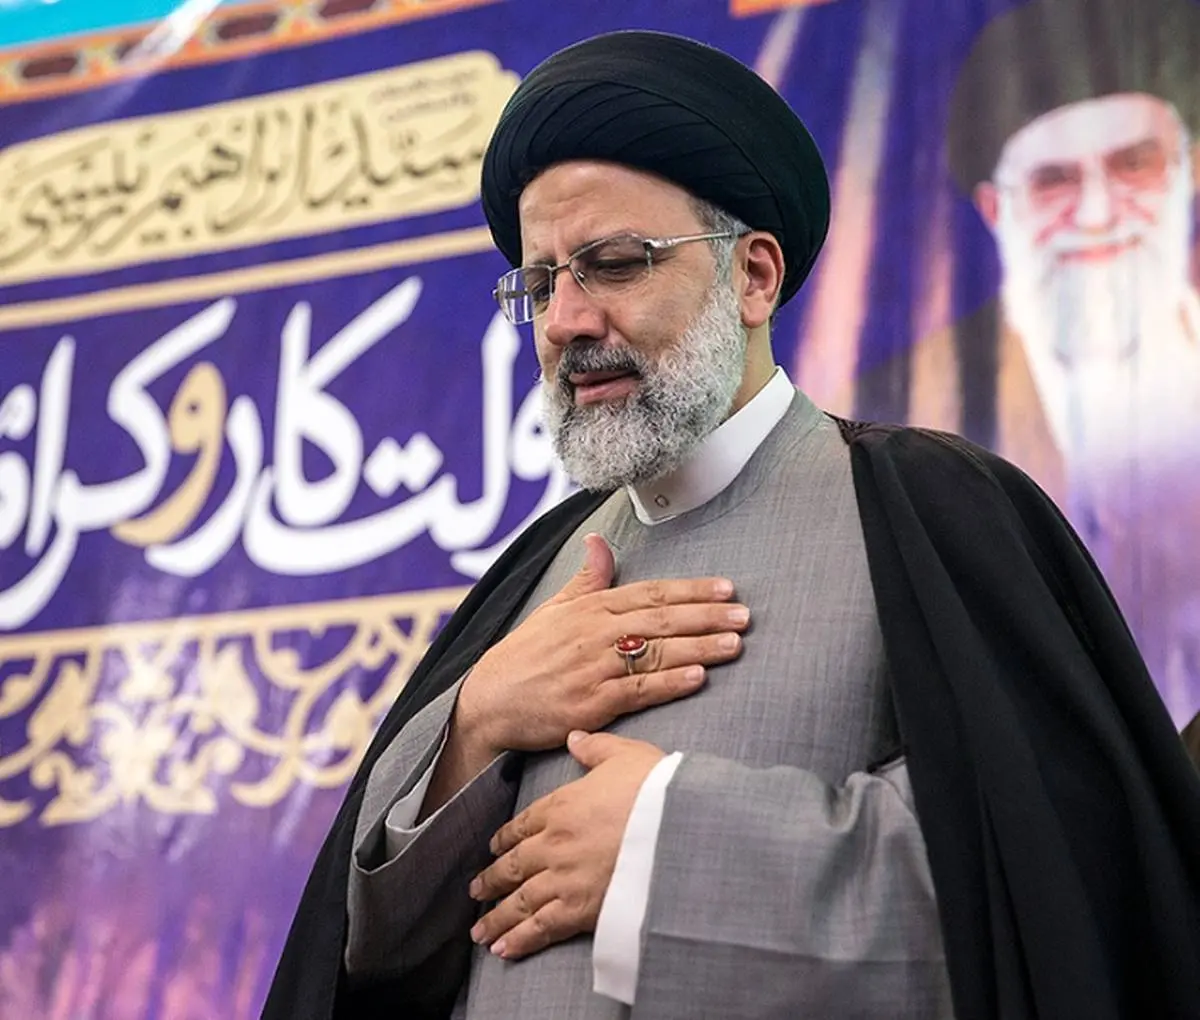 حجت الاسلام محمودی درخواست های مردم ورامین را تقدیم رئیس جمهور کرد
